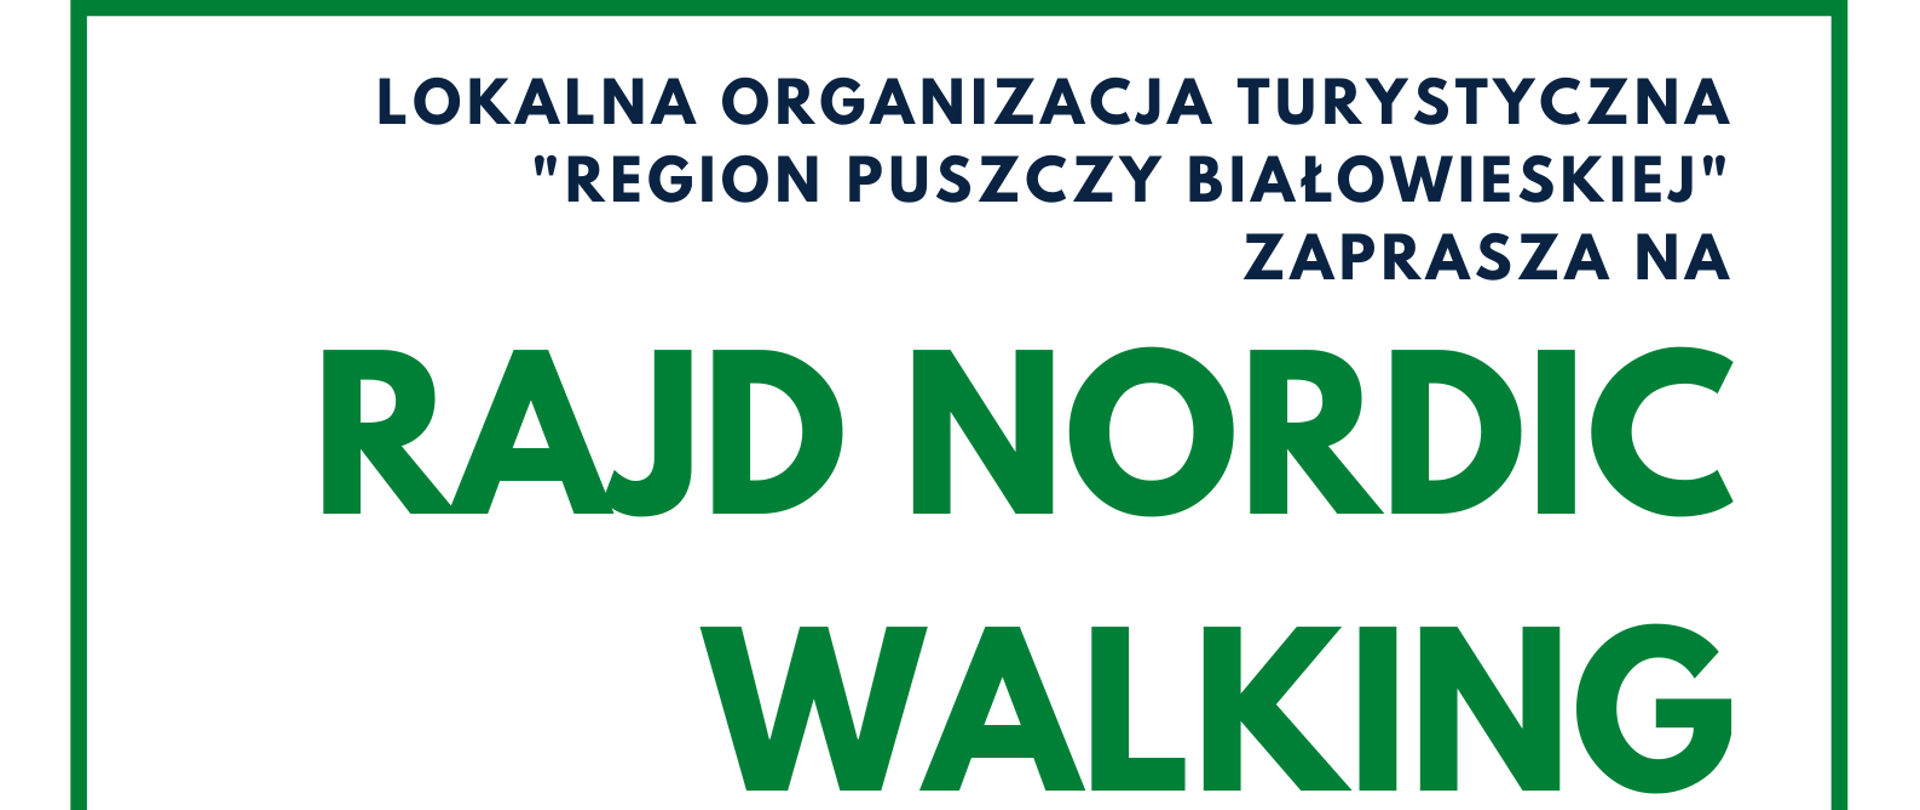 Plakat informujący rajdzie nordic walking - na białym tle informacje organizacyjne, opisane w tekście